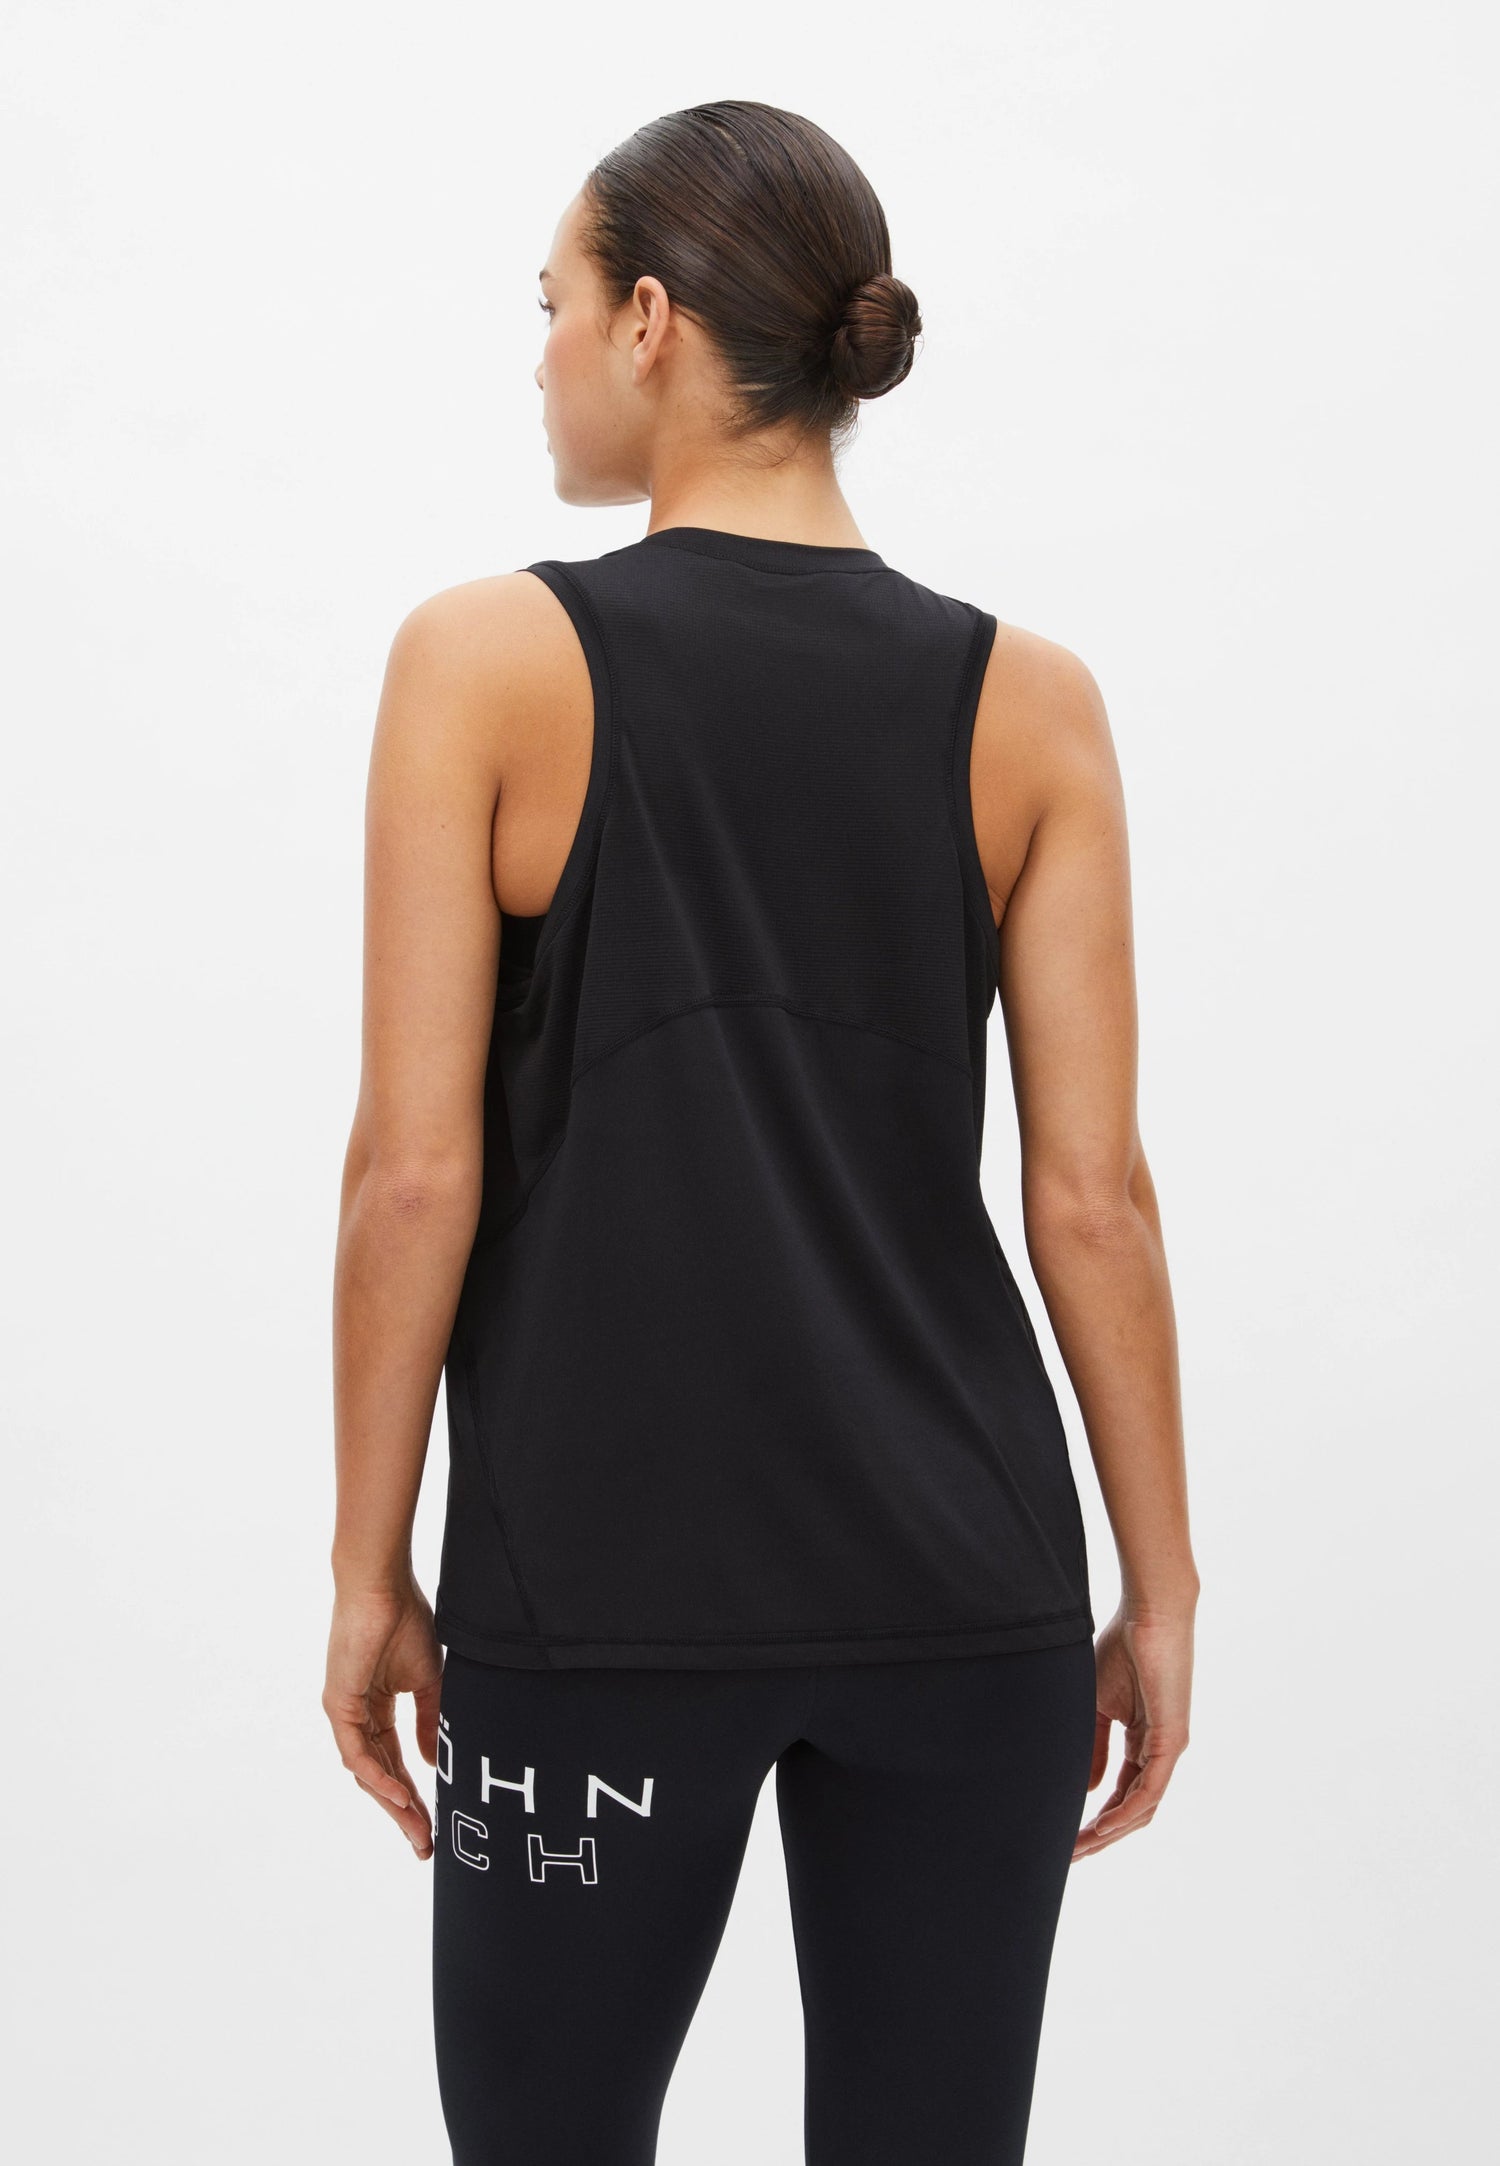 Röhnisch Workout Tank Top - Recycled polyester Black Shirt